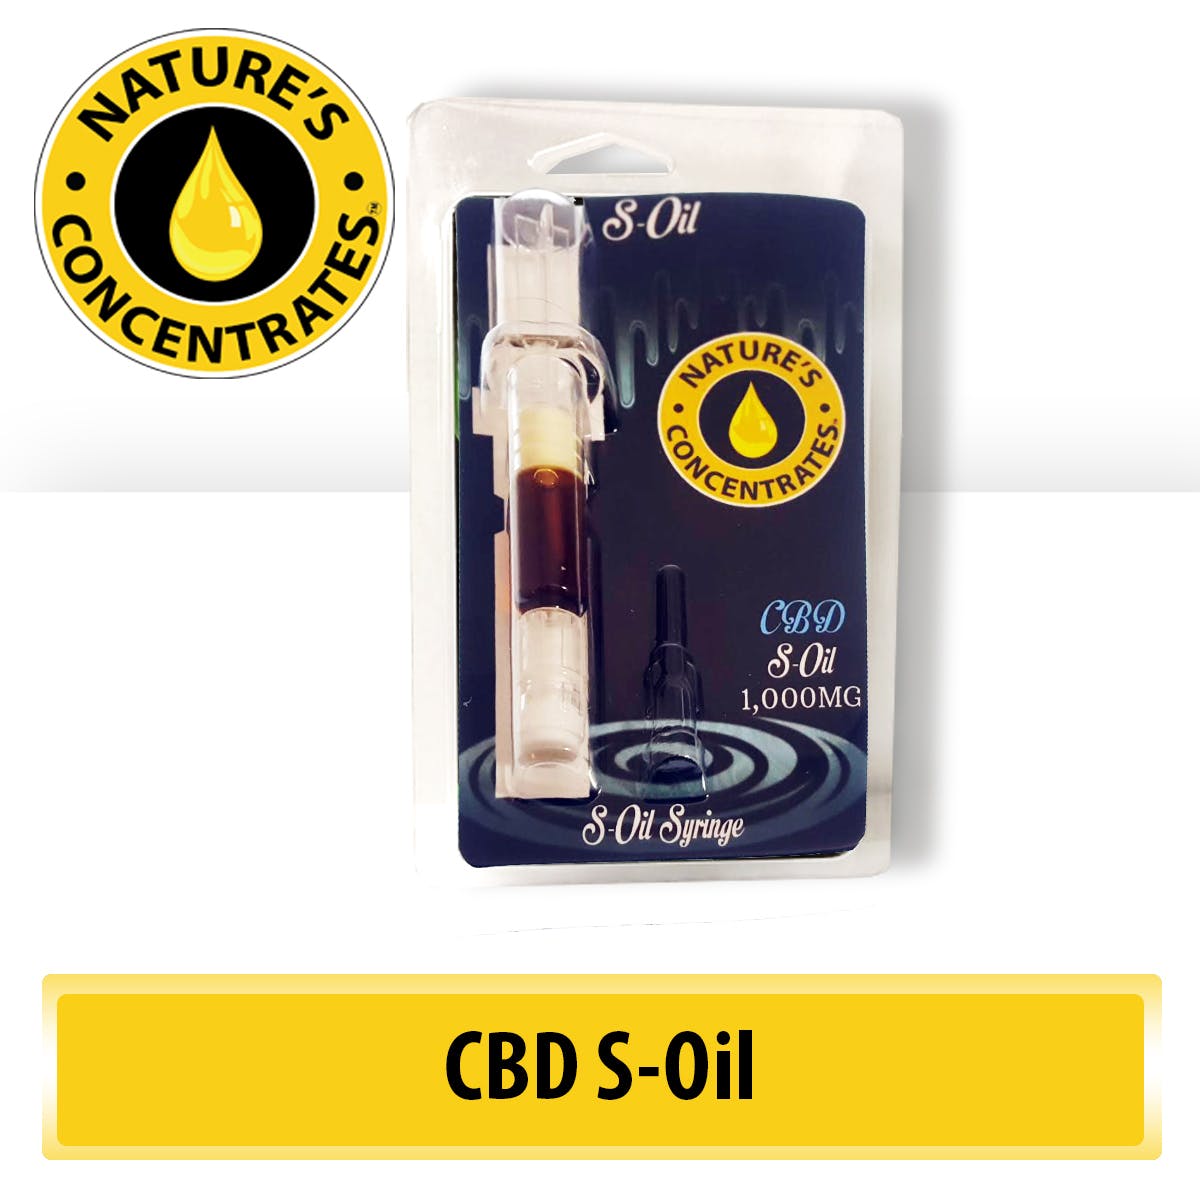 -S Oil - Nature's S-Oil (1g/THC/CBD)